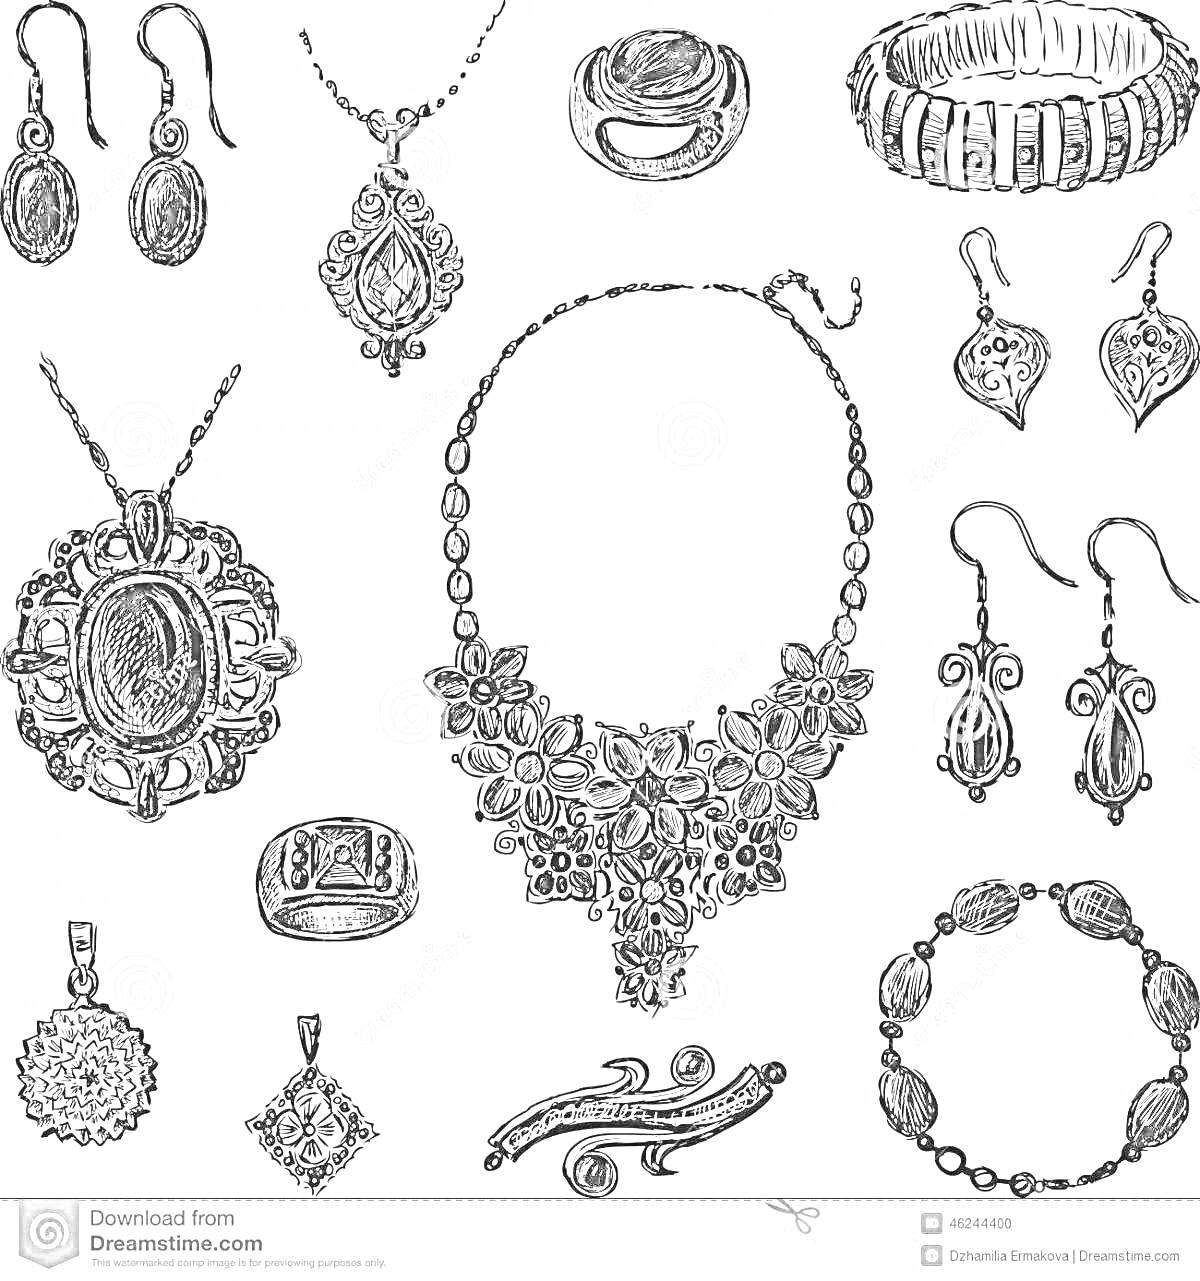 Раскраска Украшения: серьги, ожерелья, кольца, брошь, браслет и подвески